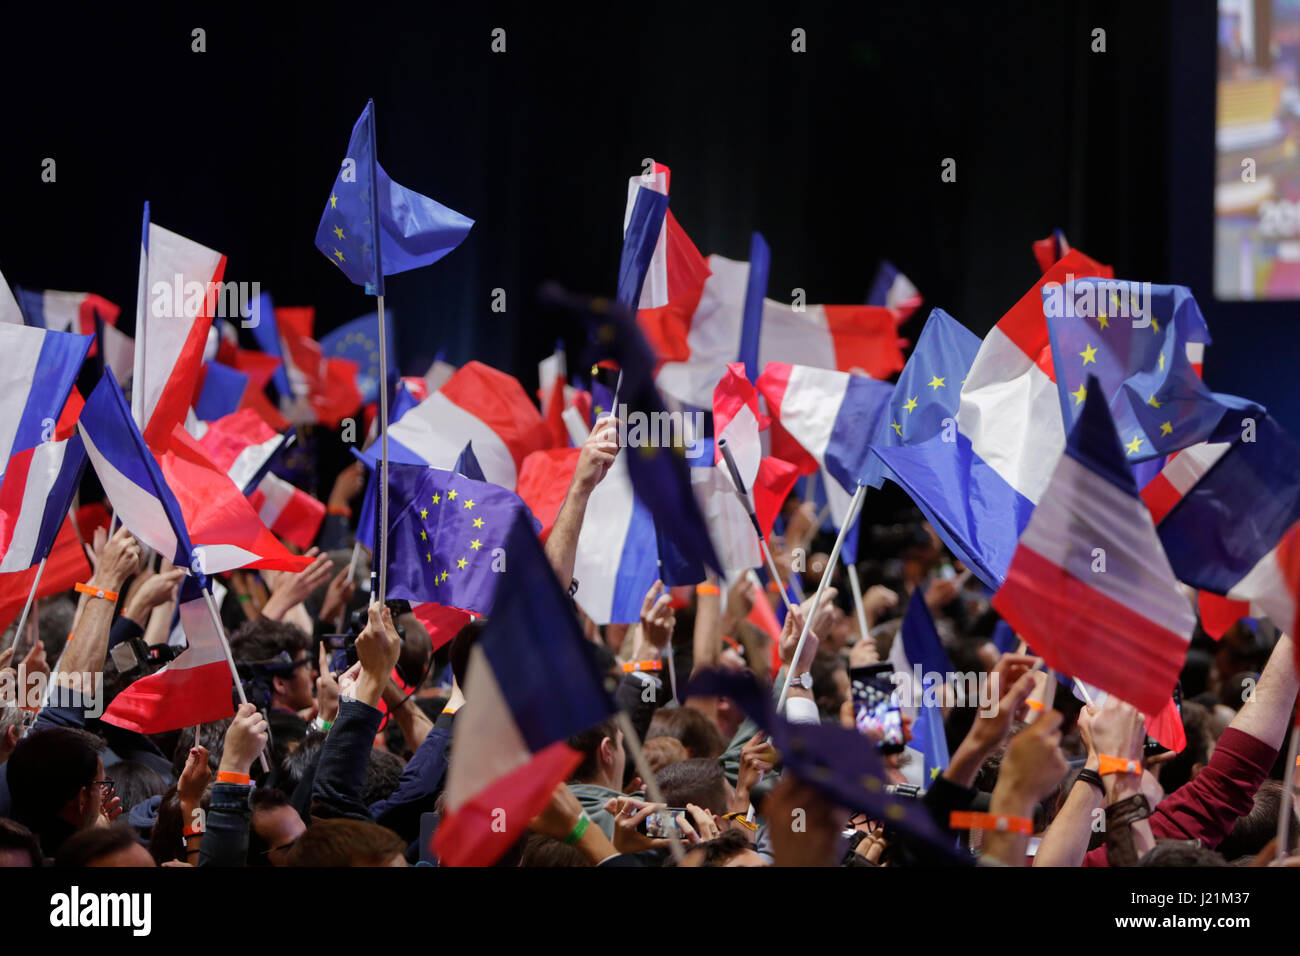 Marcon partidarios ola francesa y banderas de la UE mientras espera que las mesas para cerrar. Los partidarios de Emmanuel Macron, el candidato presidencial del partido social liberal en Marche! Celebrar las encuestas de salida, que lo ven en primer lugar, por delante de Marine Le Pen, del Frente Nacional en la primera ronda de las elecciones presidenciales francesas. Foto: Cronos/Michael Debets Foto de stock